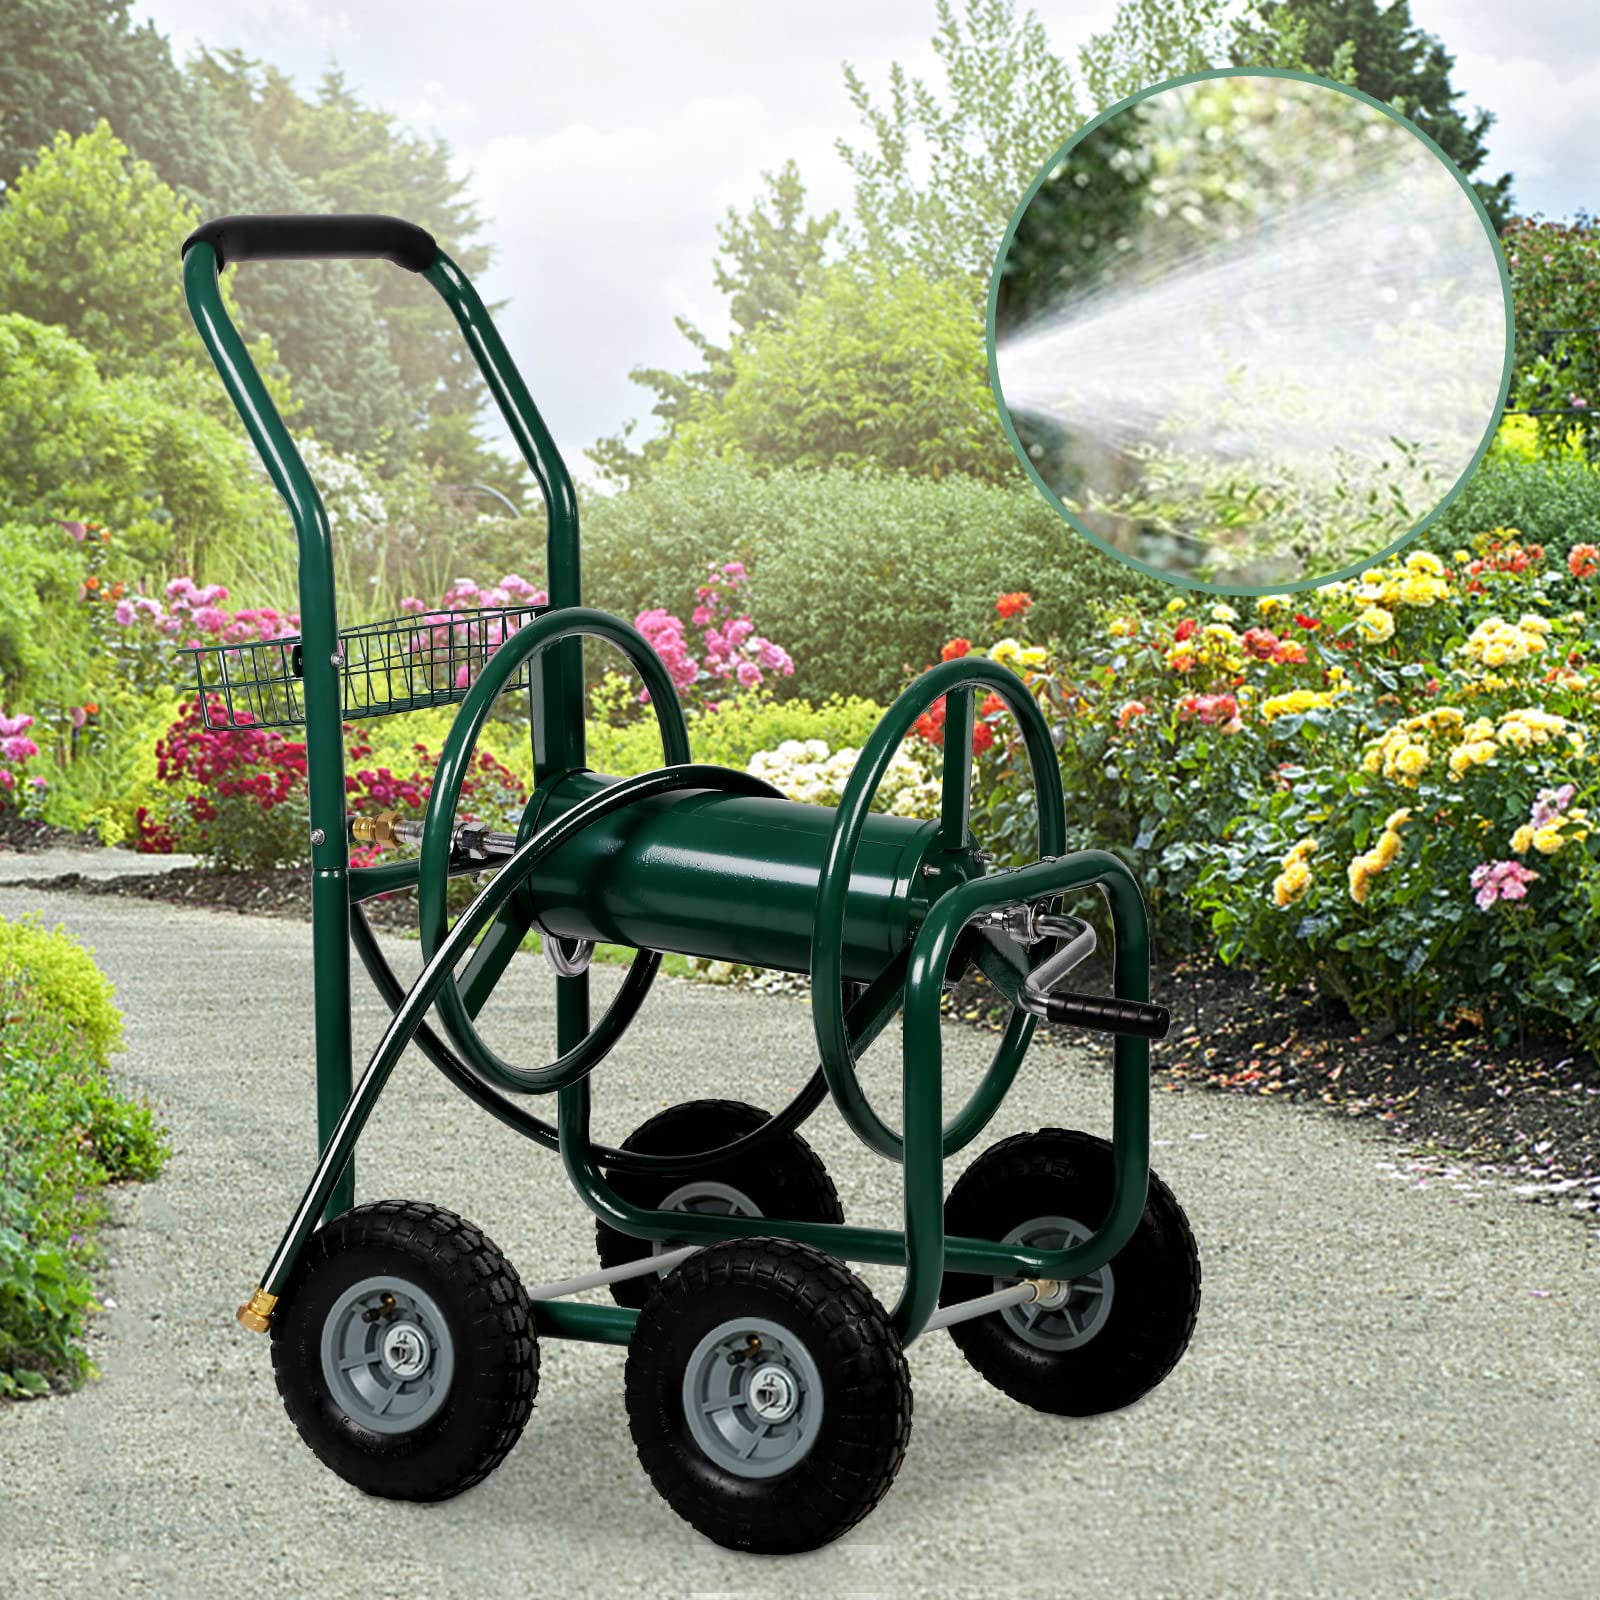 Garden Hose Reel Cart, Hose Reel Cart with 4 Wheels, Heavy Duty